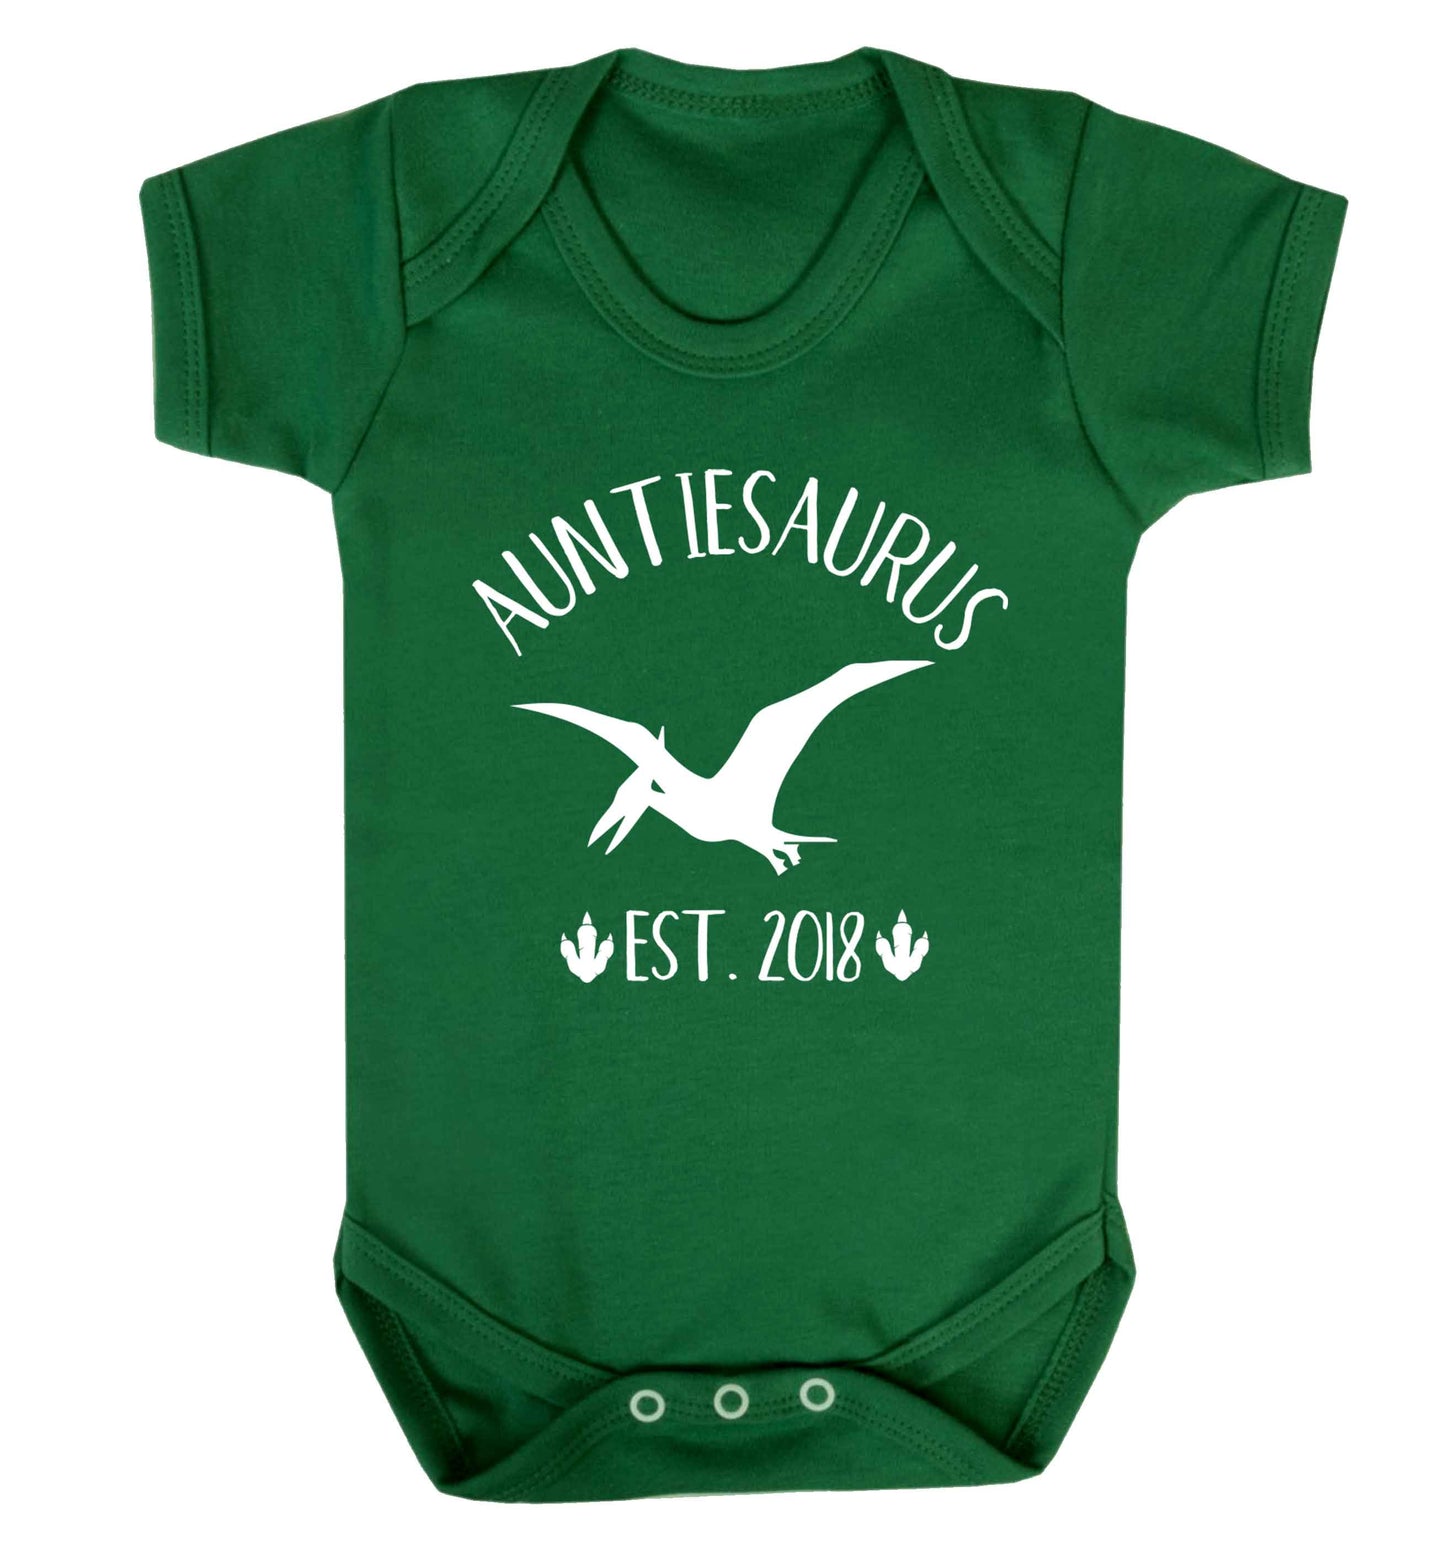 Personalised auntiesaurus since (custom date) Baby Vest green 18-24 months